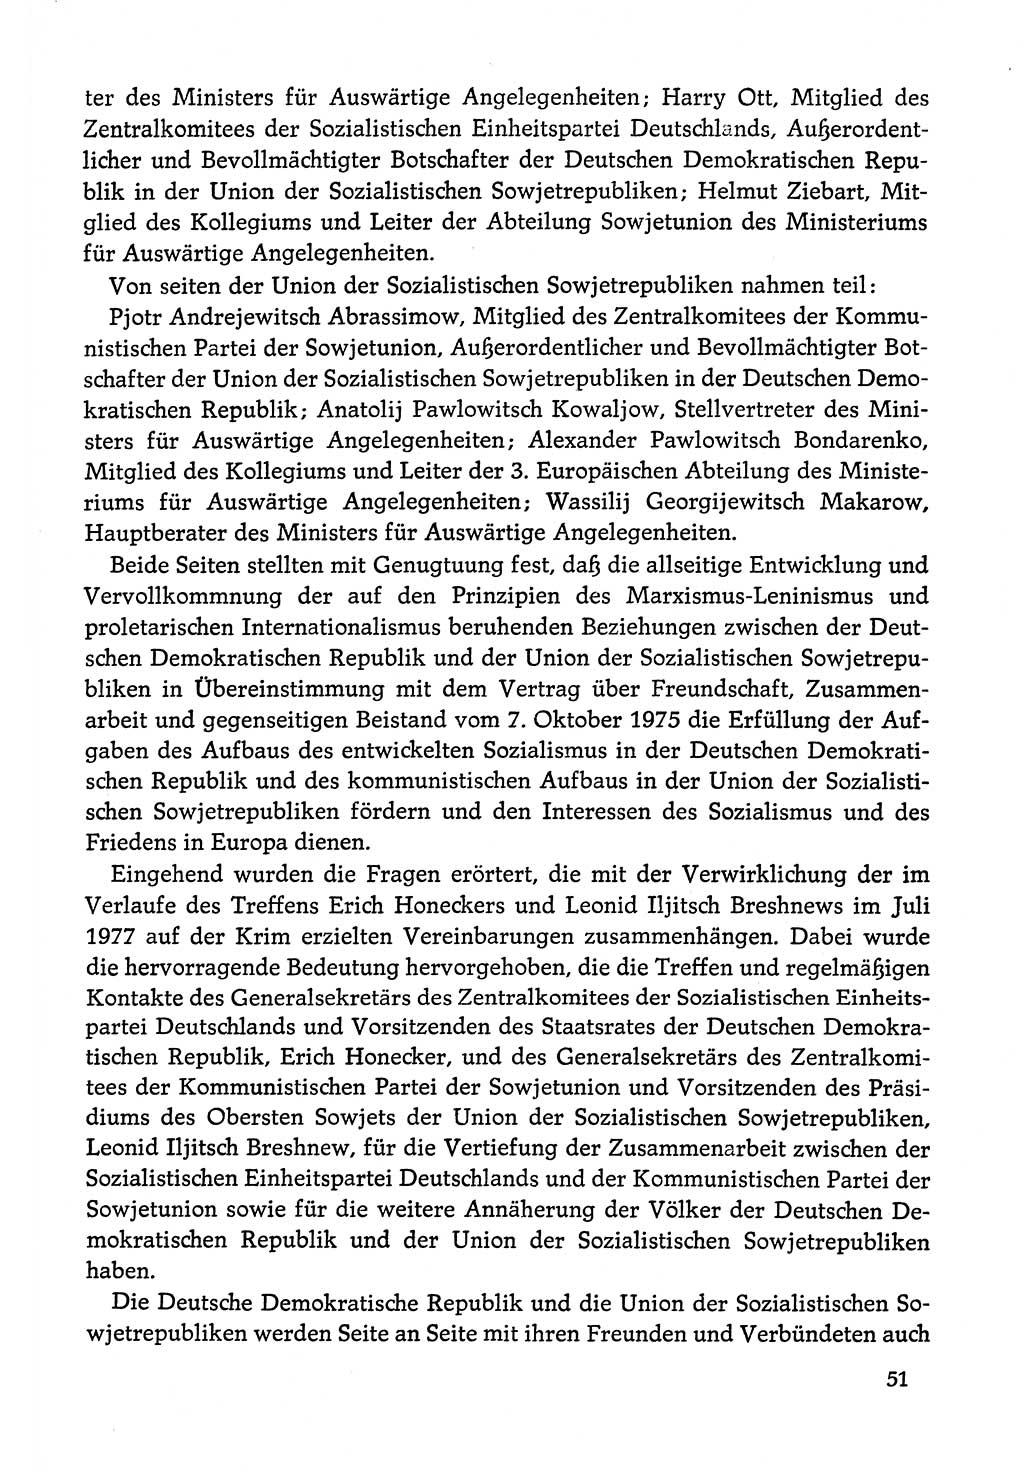 Dokumente der Sozialistischen Einheitspartei Deutschlands (SED) [Deutsche Demokratische Republik (DDR)] 1978-1979, Seite 51 (Dok. SED DDR 1978-1979, S. 51)